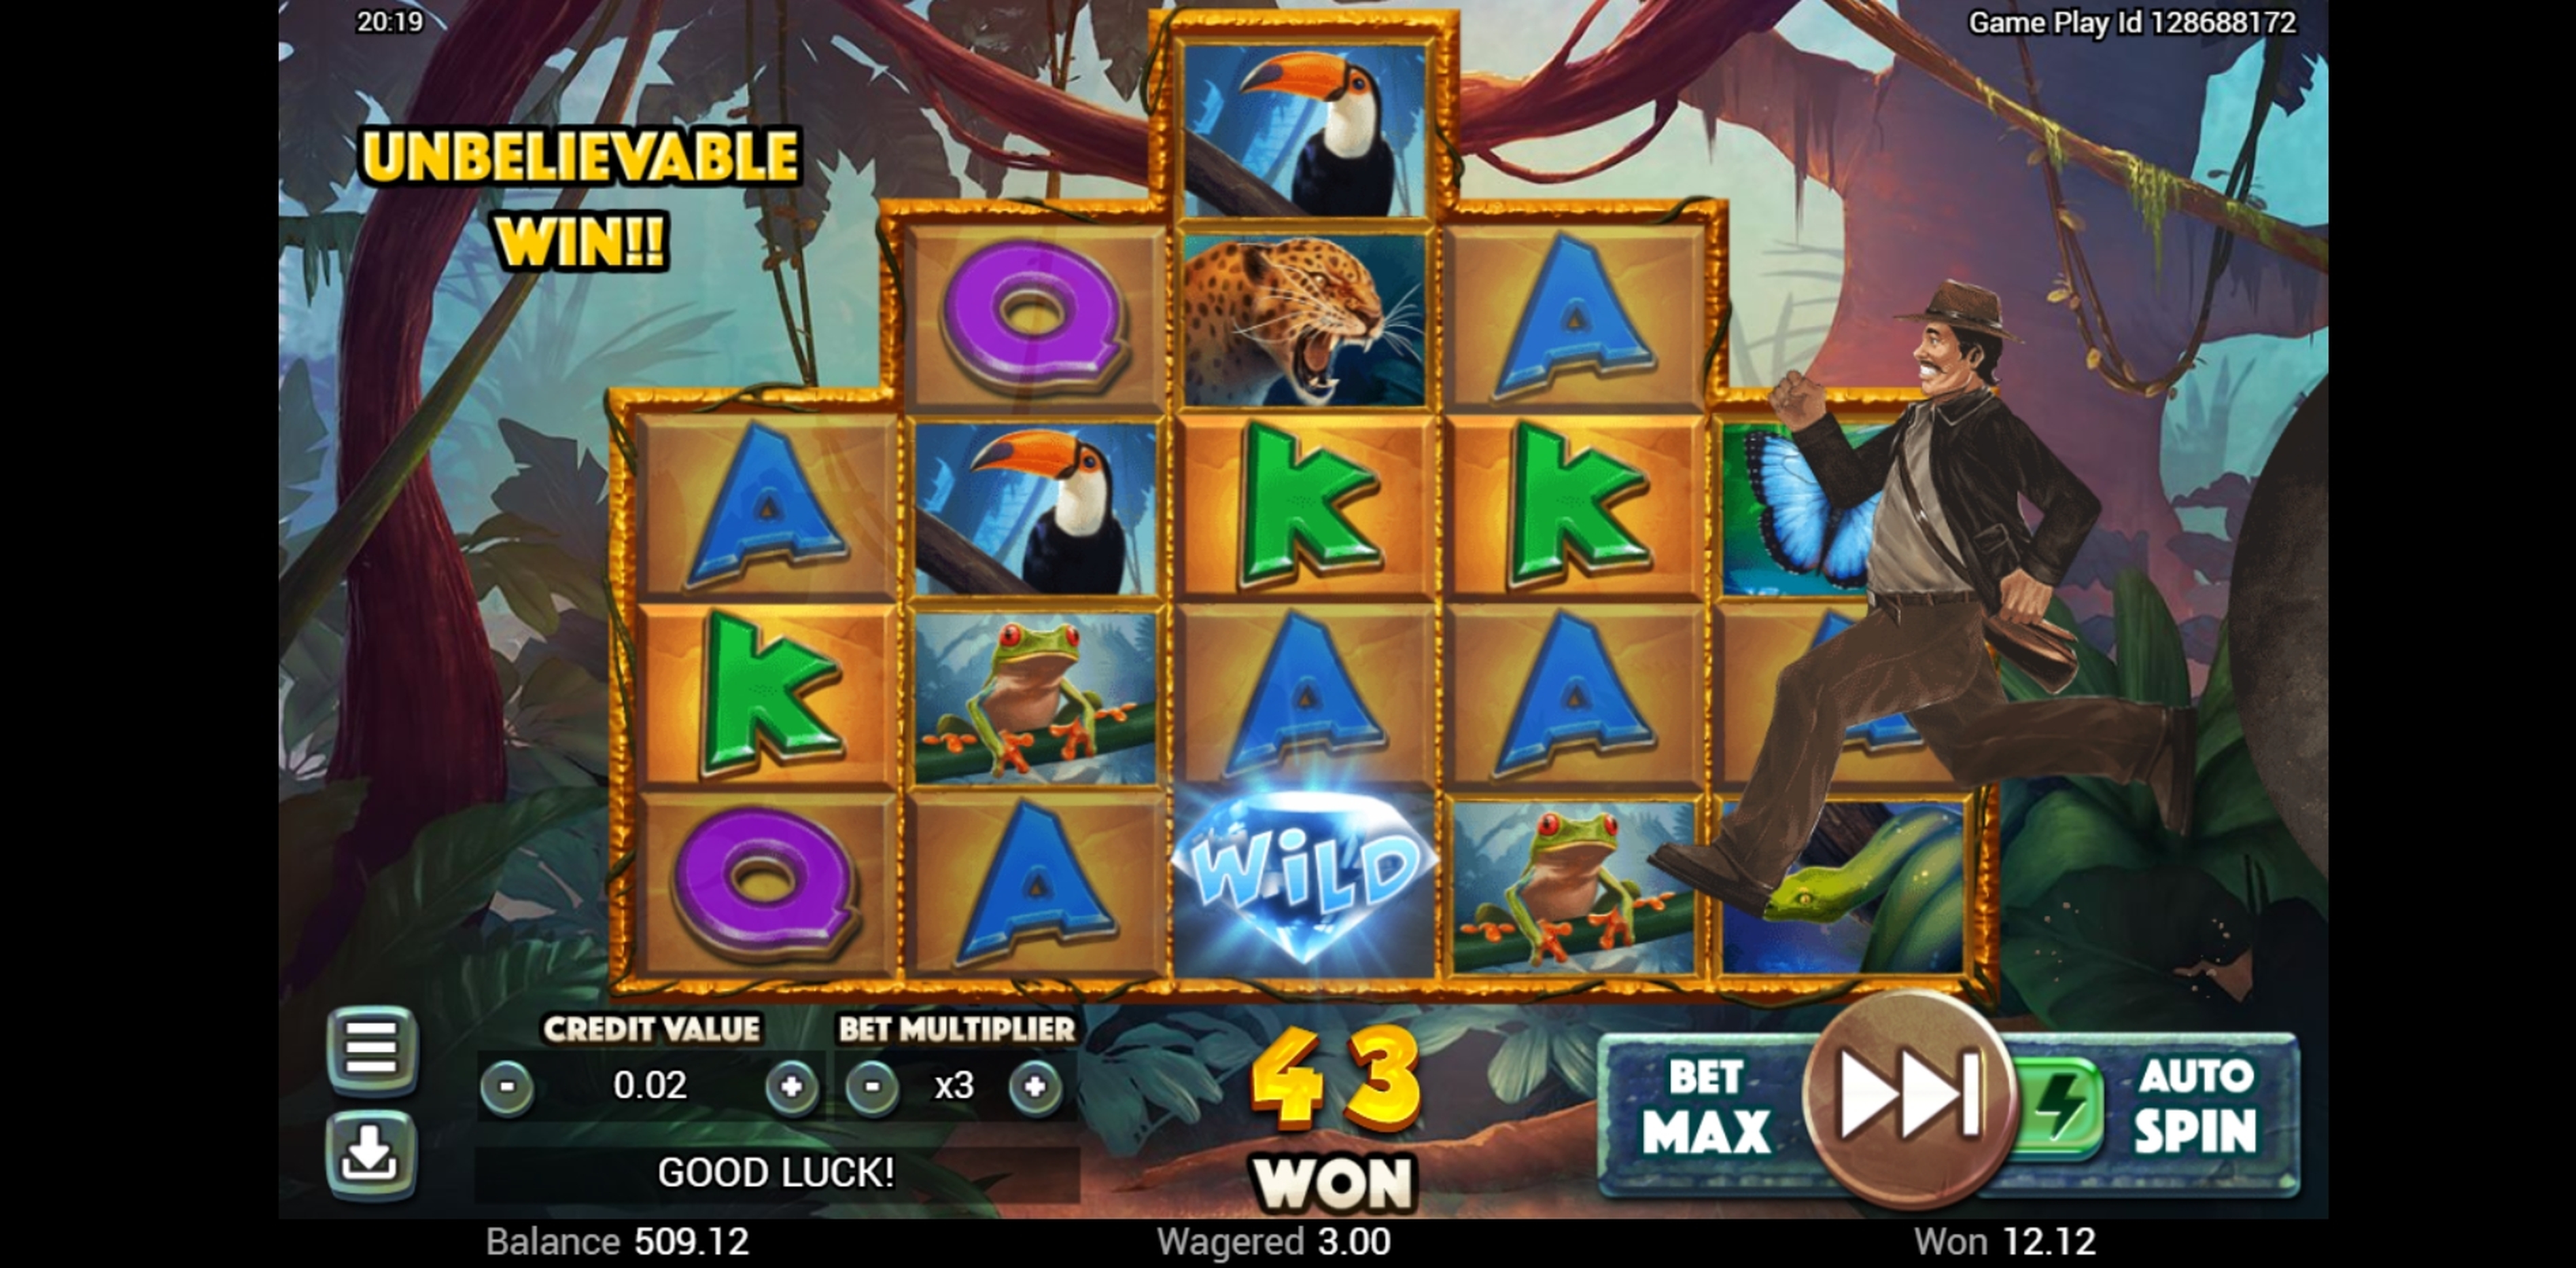 Win Money in Golden Amazon Free Slot Game by Swintt